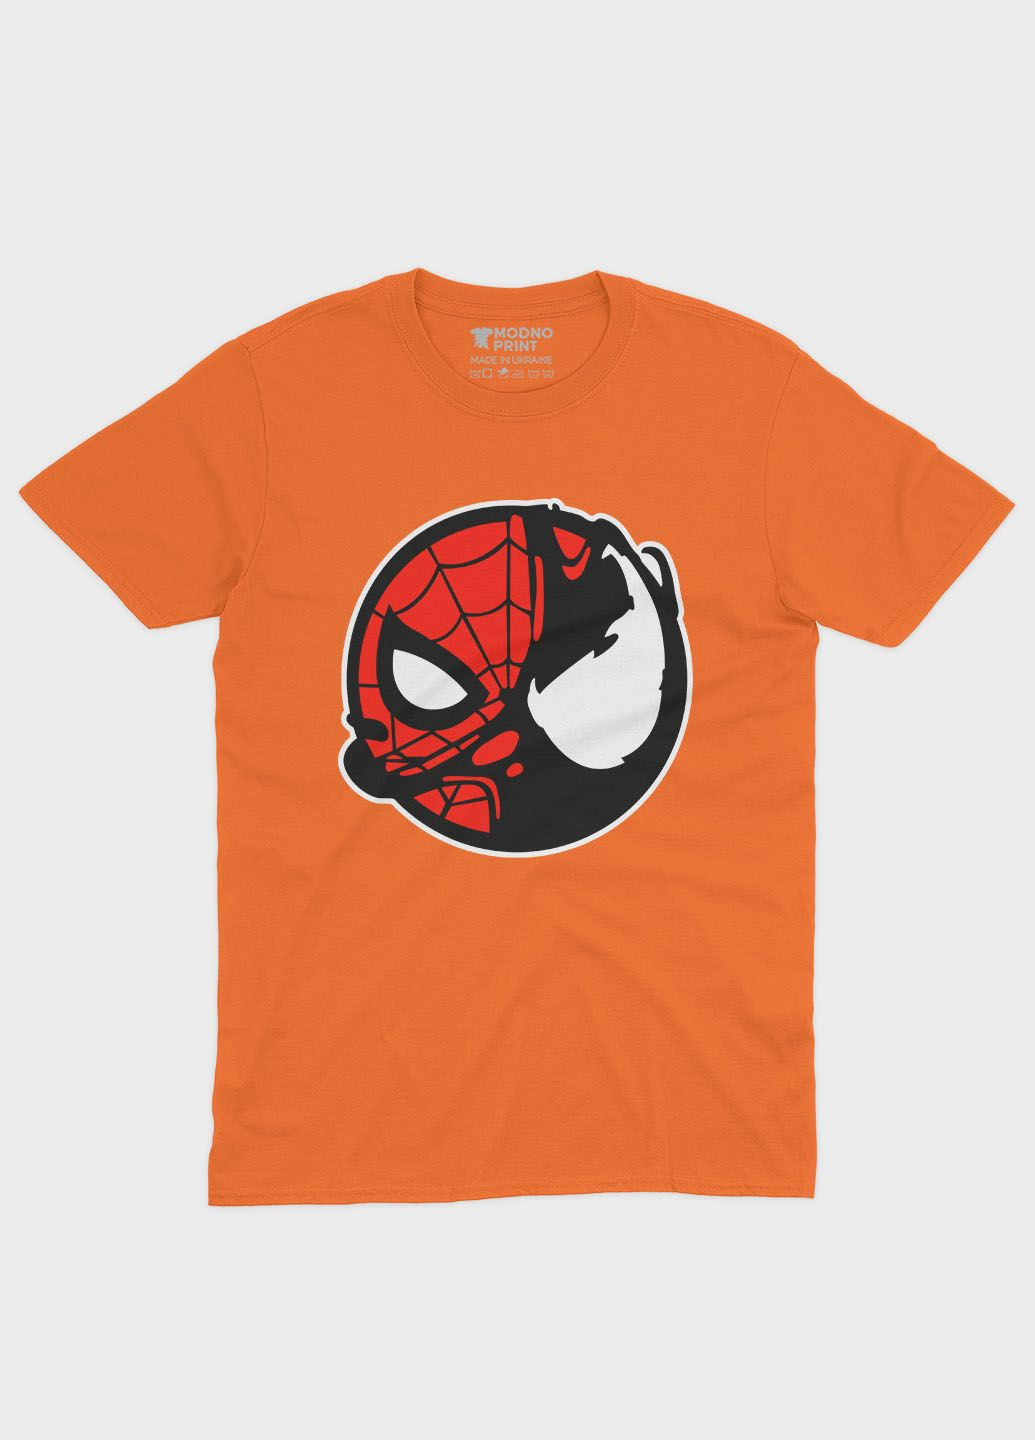 Оранжевая демисезонная футболка для девочки с принтом супергероя - человек-паук (ts001-1-ora-006-014-100-g) Modno